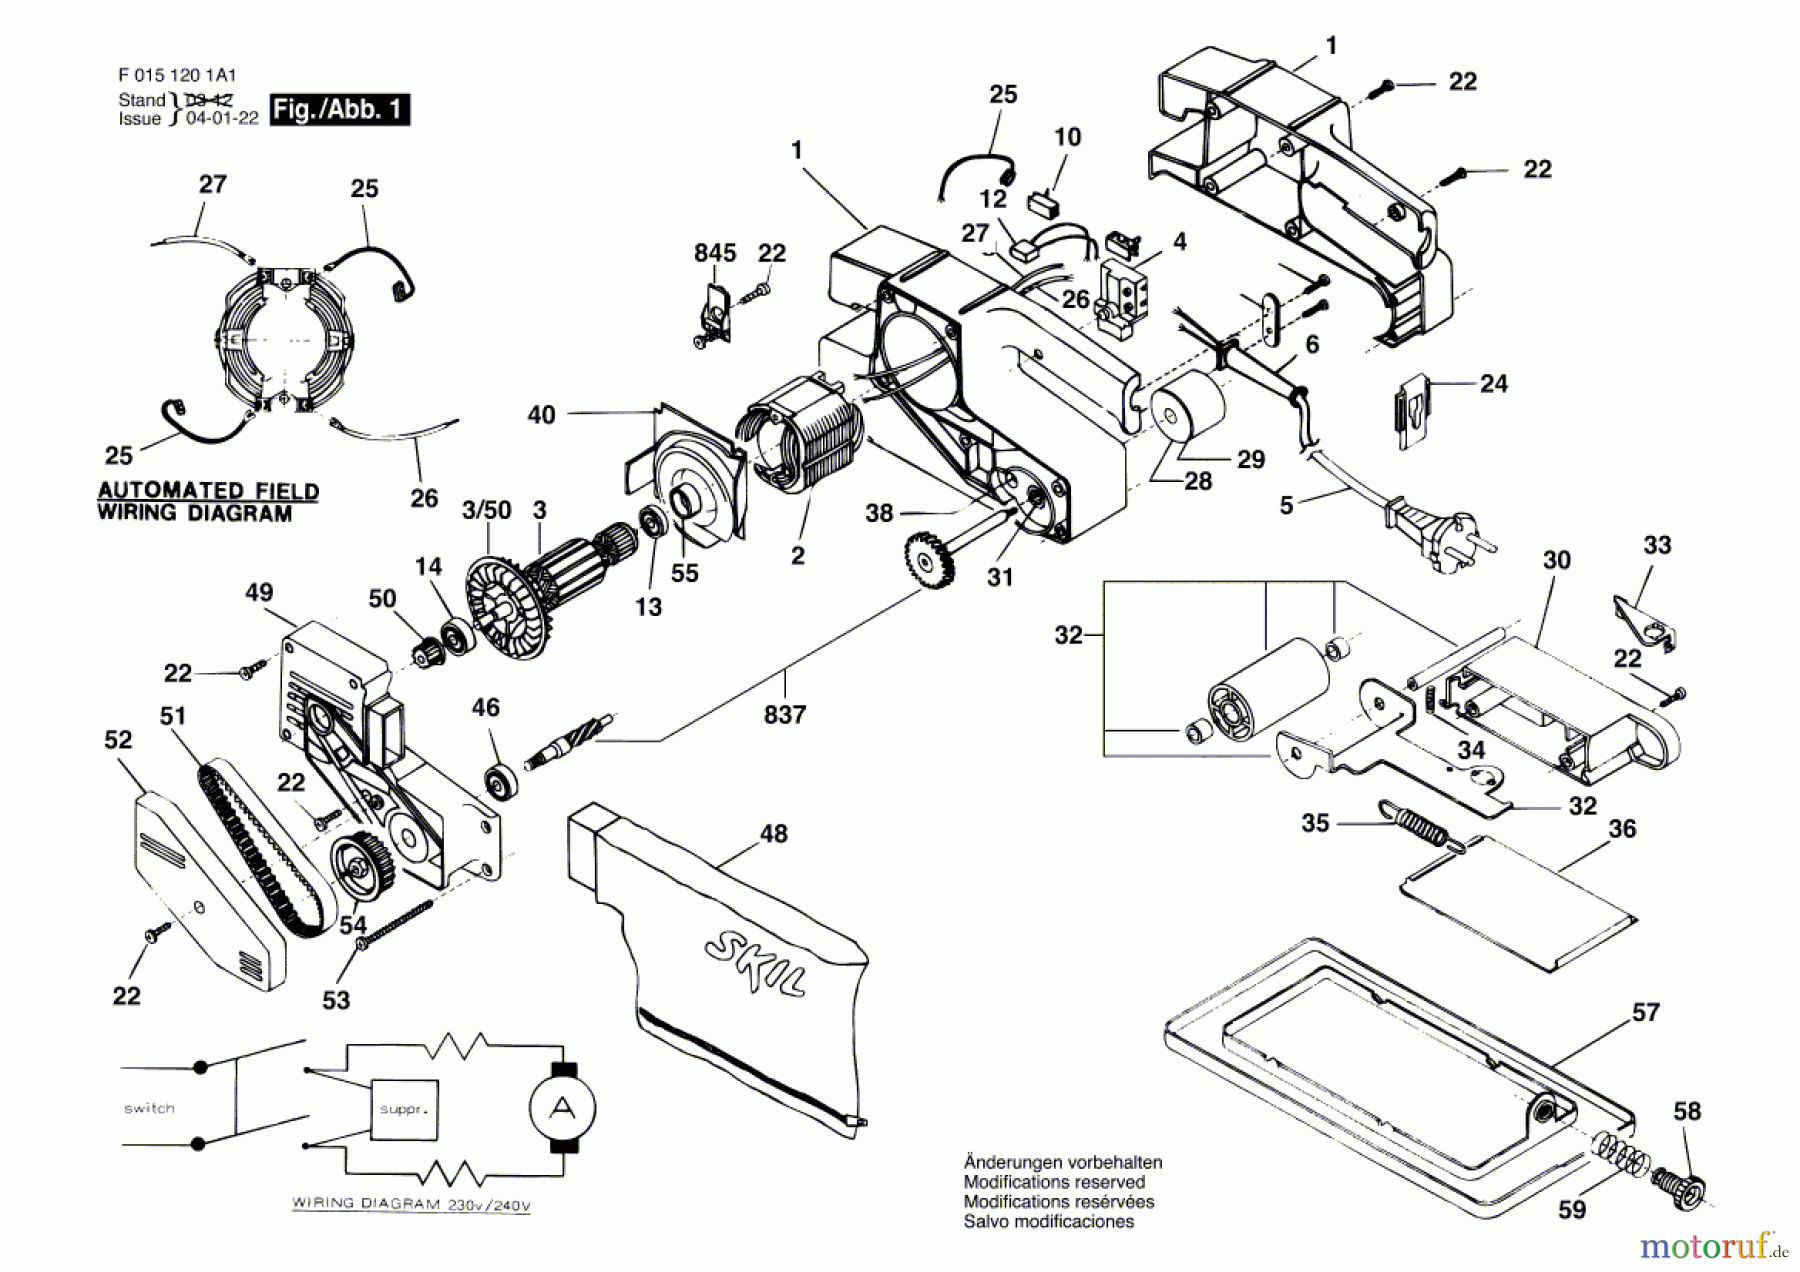  Bosch Werkzeug Bandschleifer 1201H1 Seite 1